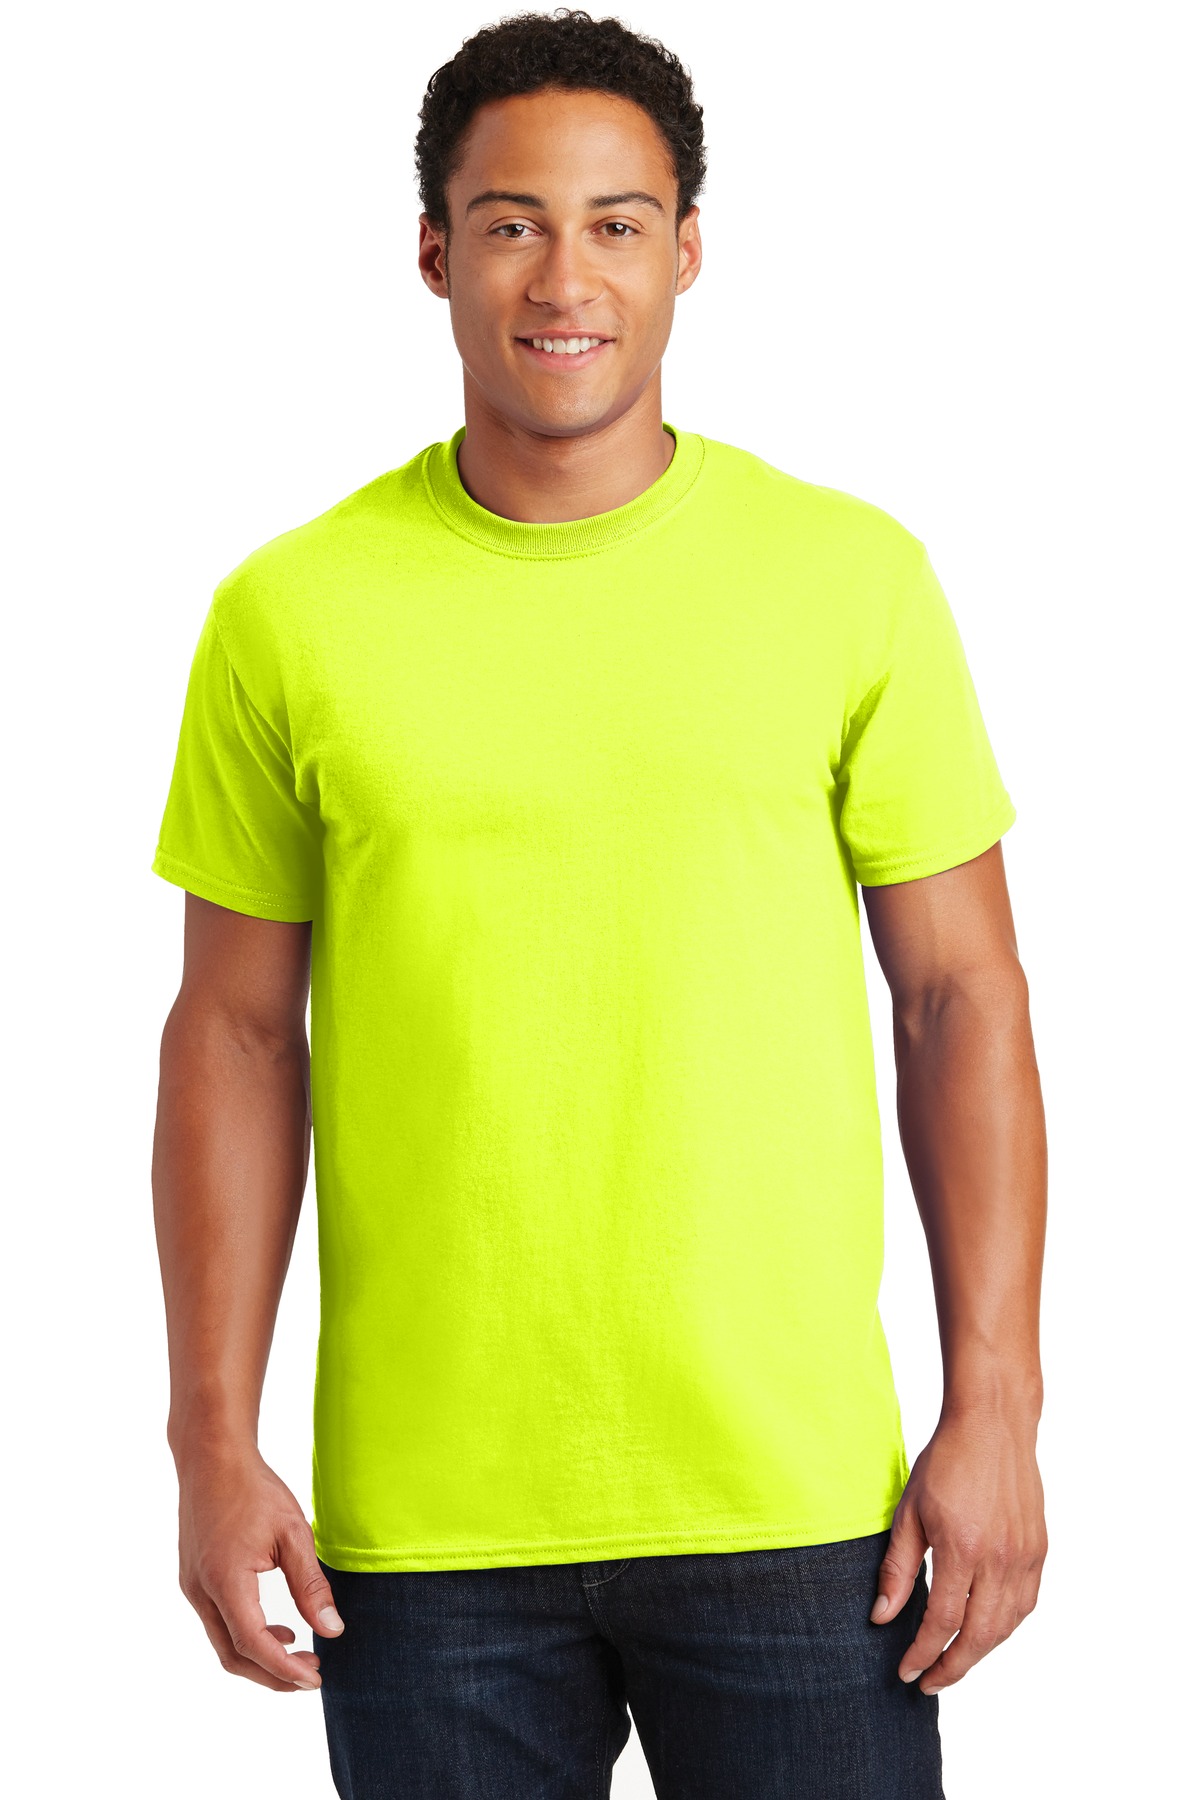 Gildan G200 Adult Ultra Cotton T-Shirt - Safety Green - XL